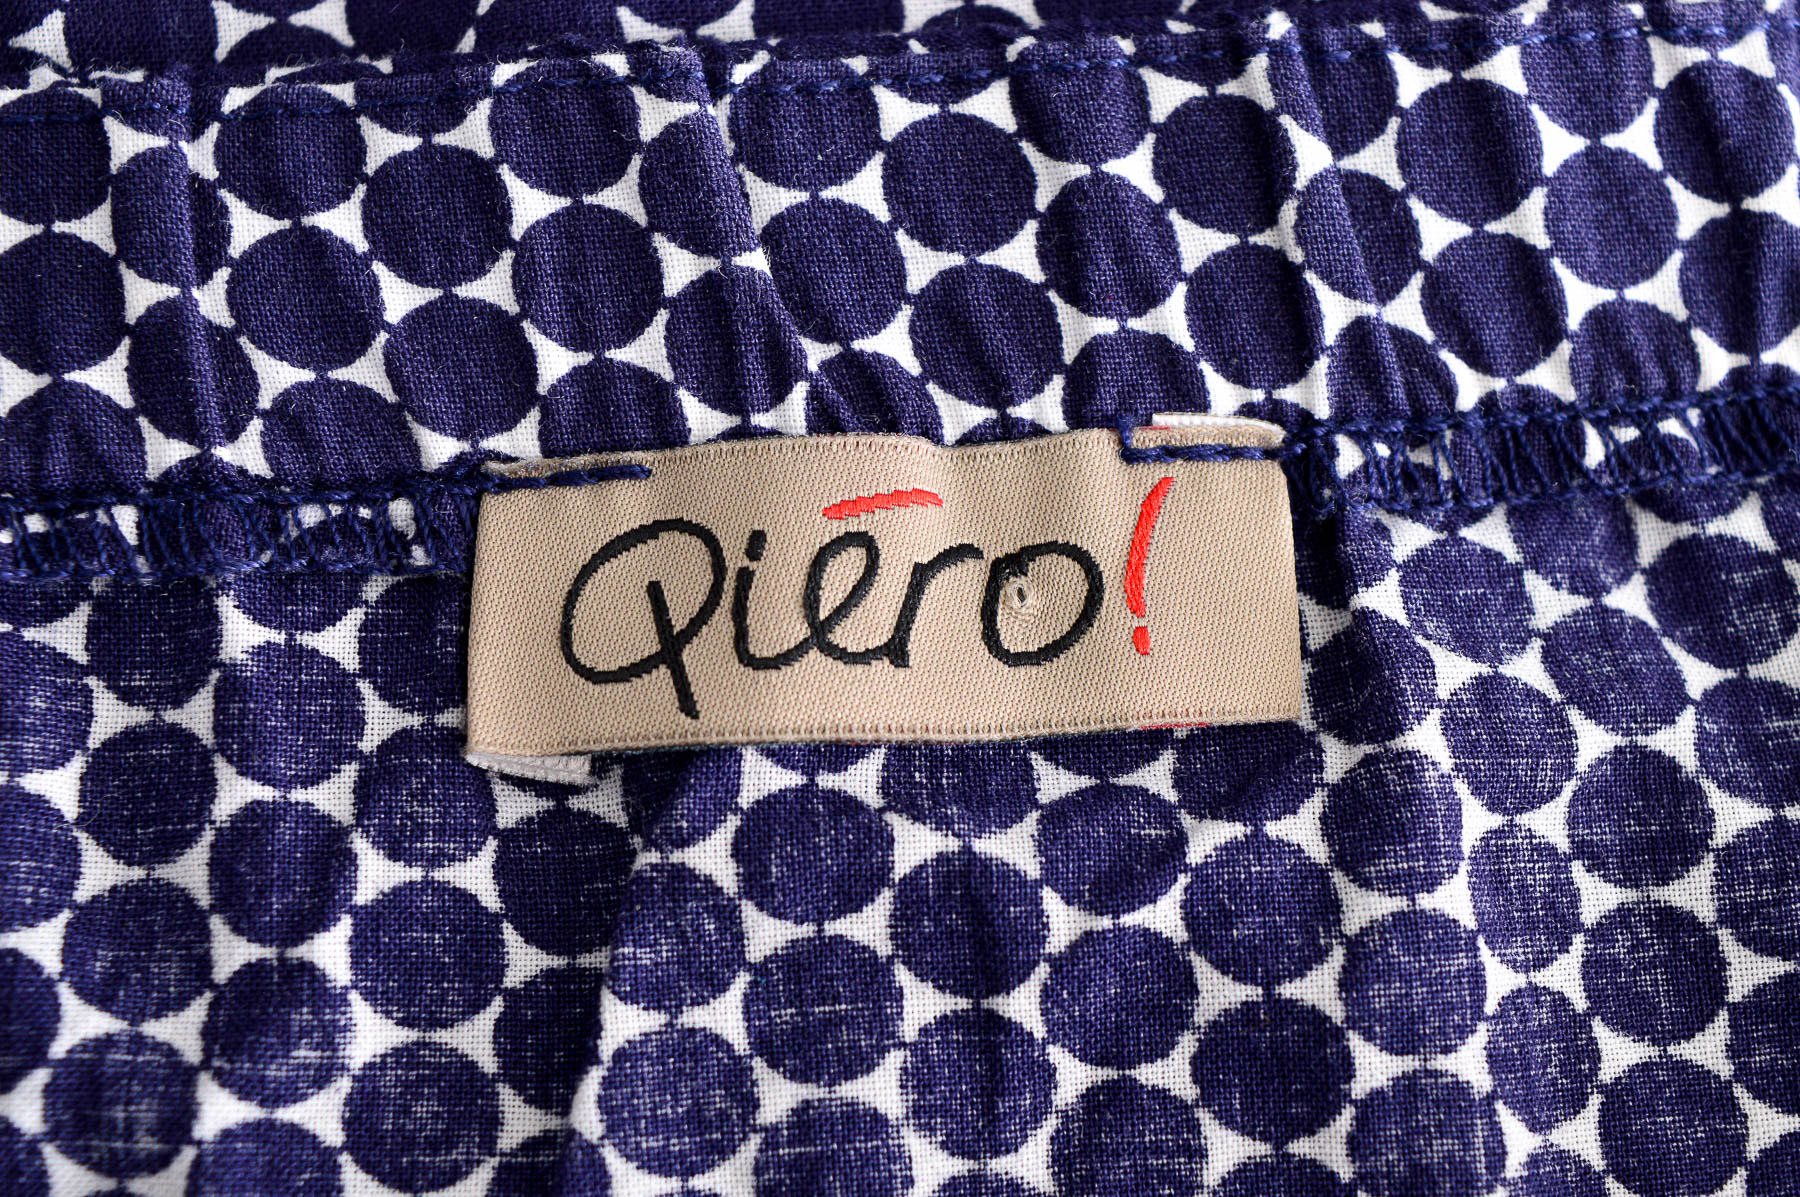 Γυναικείо πουκάμισο - Qiero! - 2